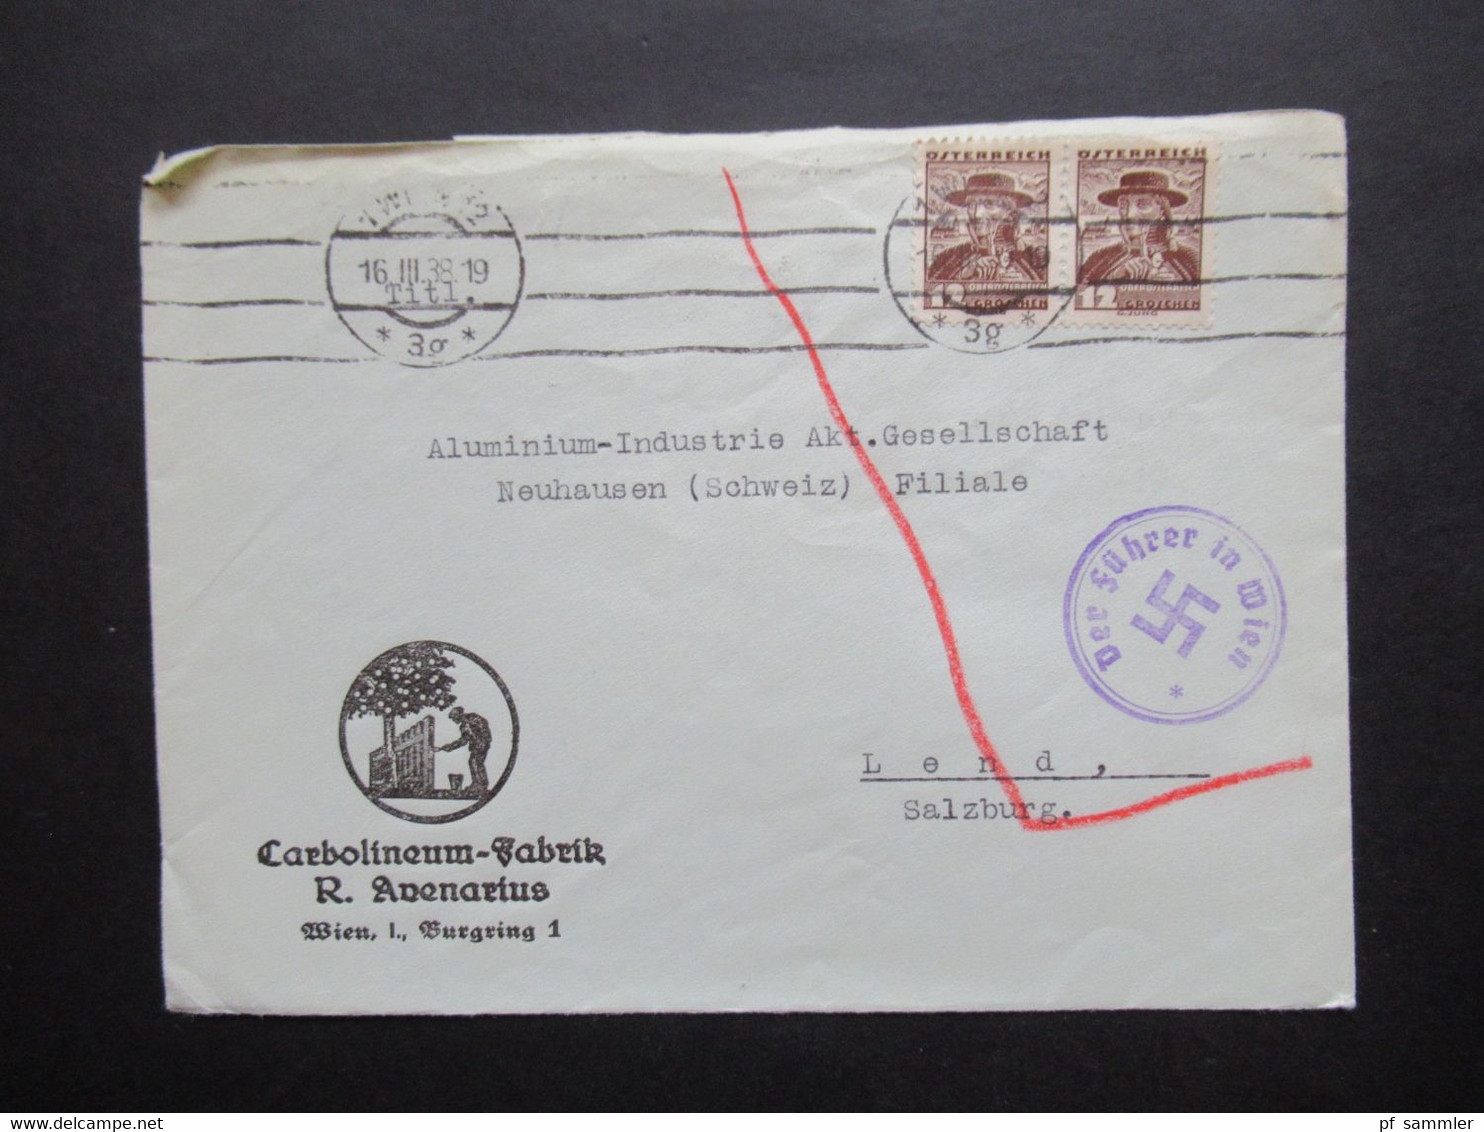 Österreich Ostmark 16.3.1938 Firmenumschlag Carbolineum Fabrik R. Avenarius Wien Propagandastempel Der Führer In Wien - Covers & Documents